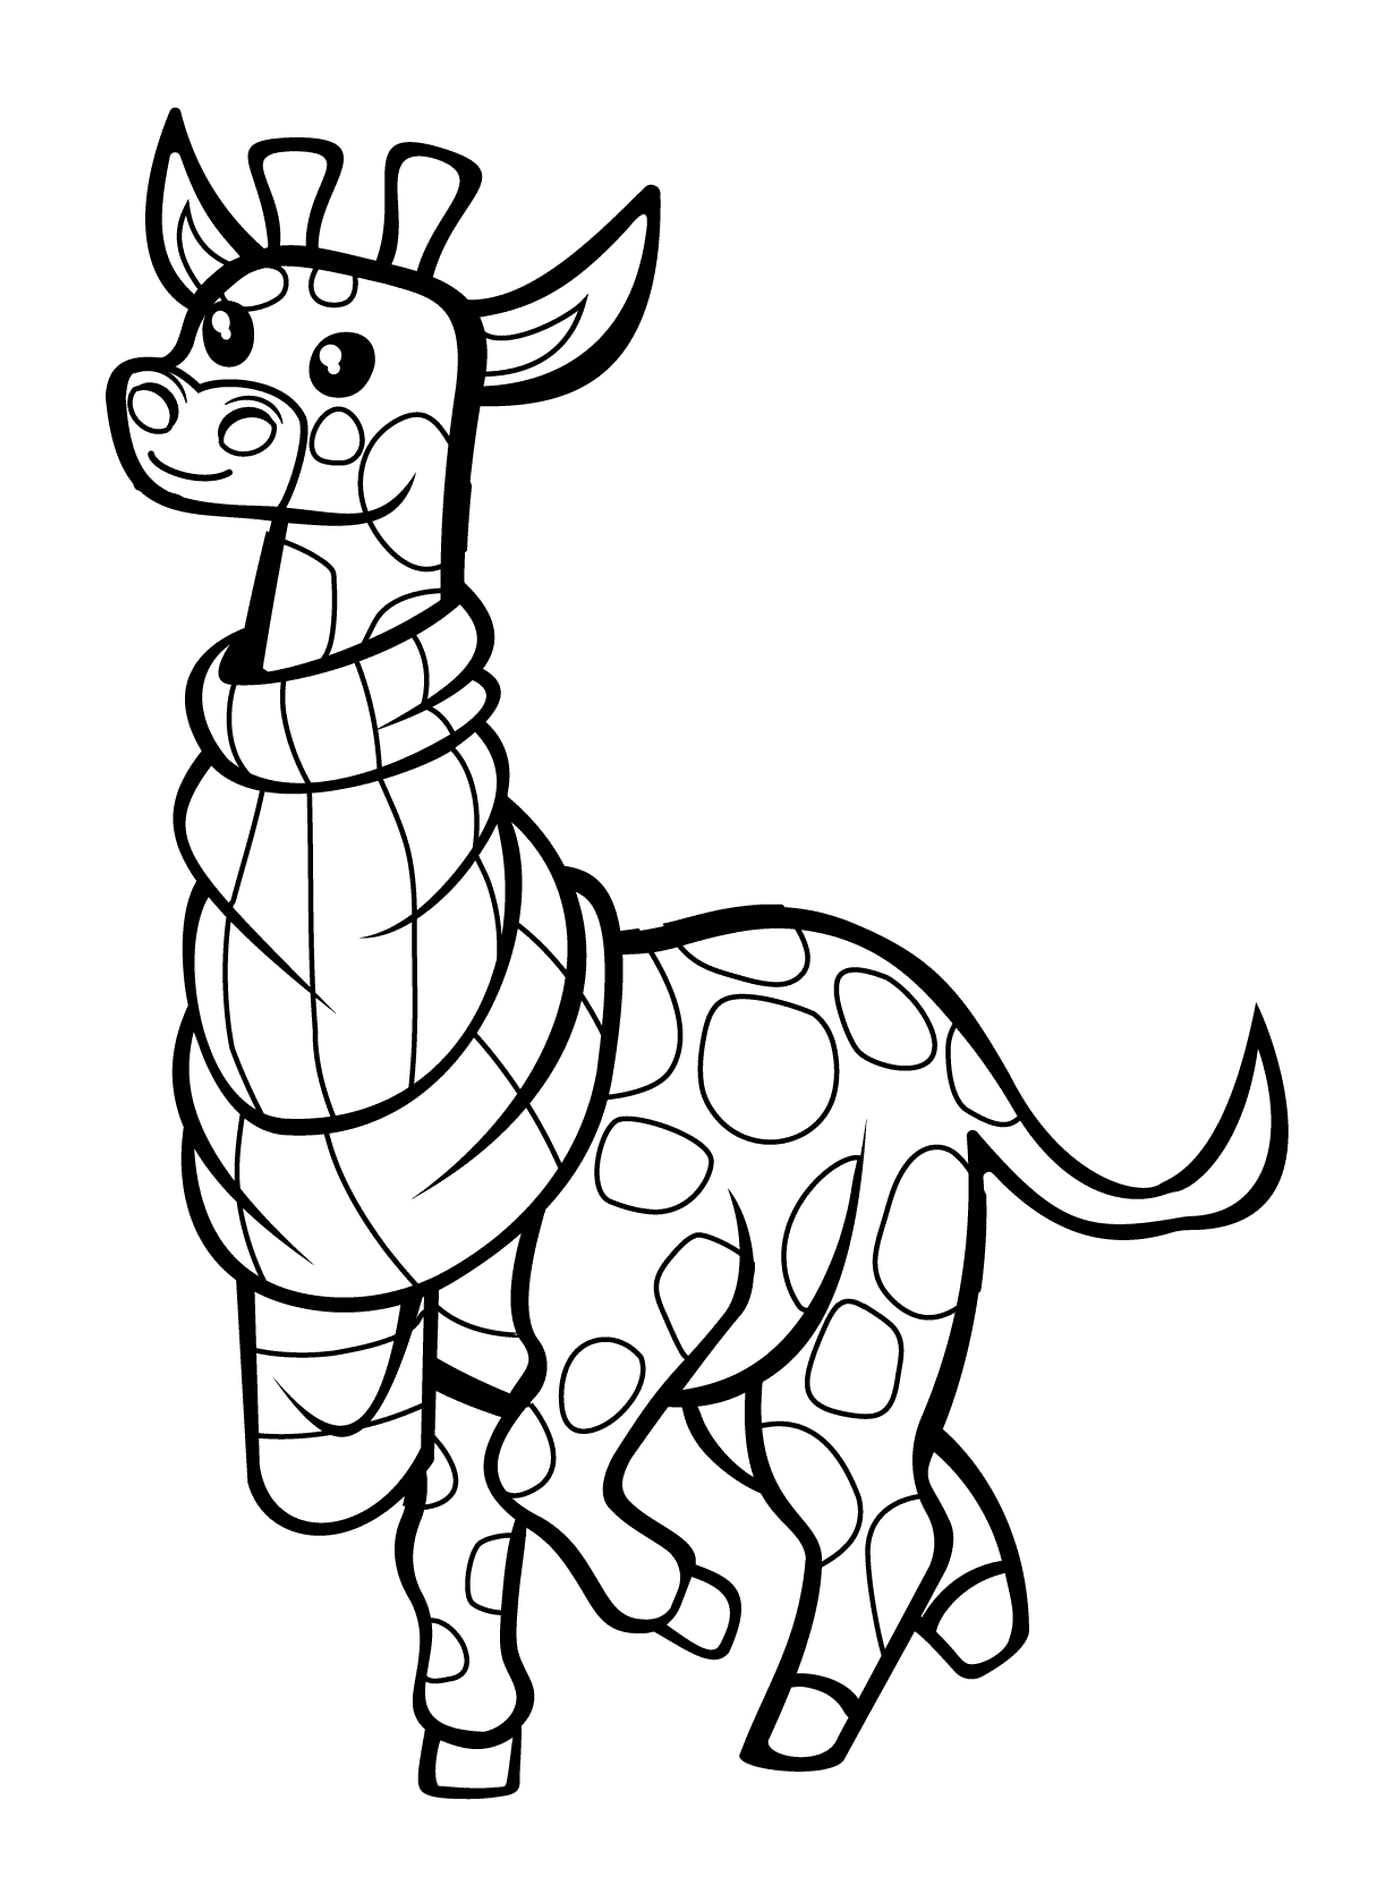  Uma girafa usando um lenço 